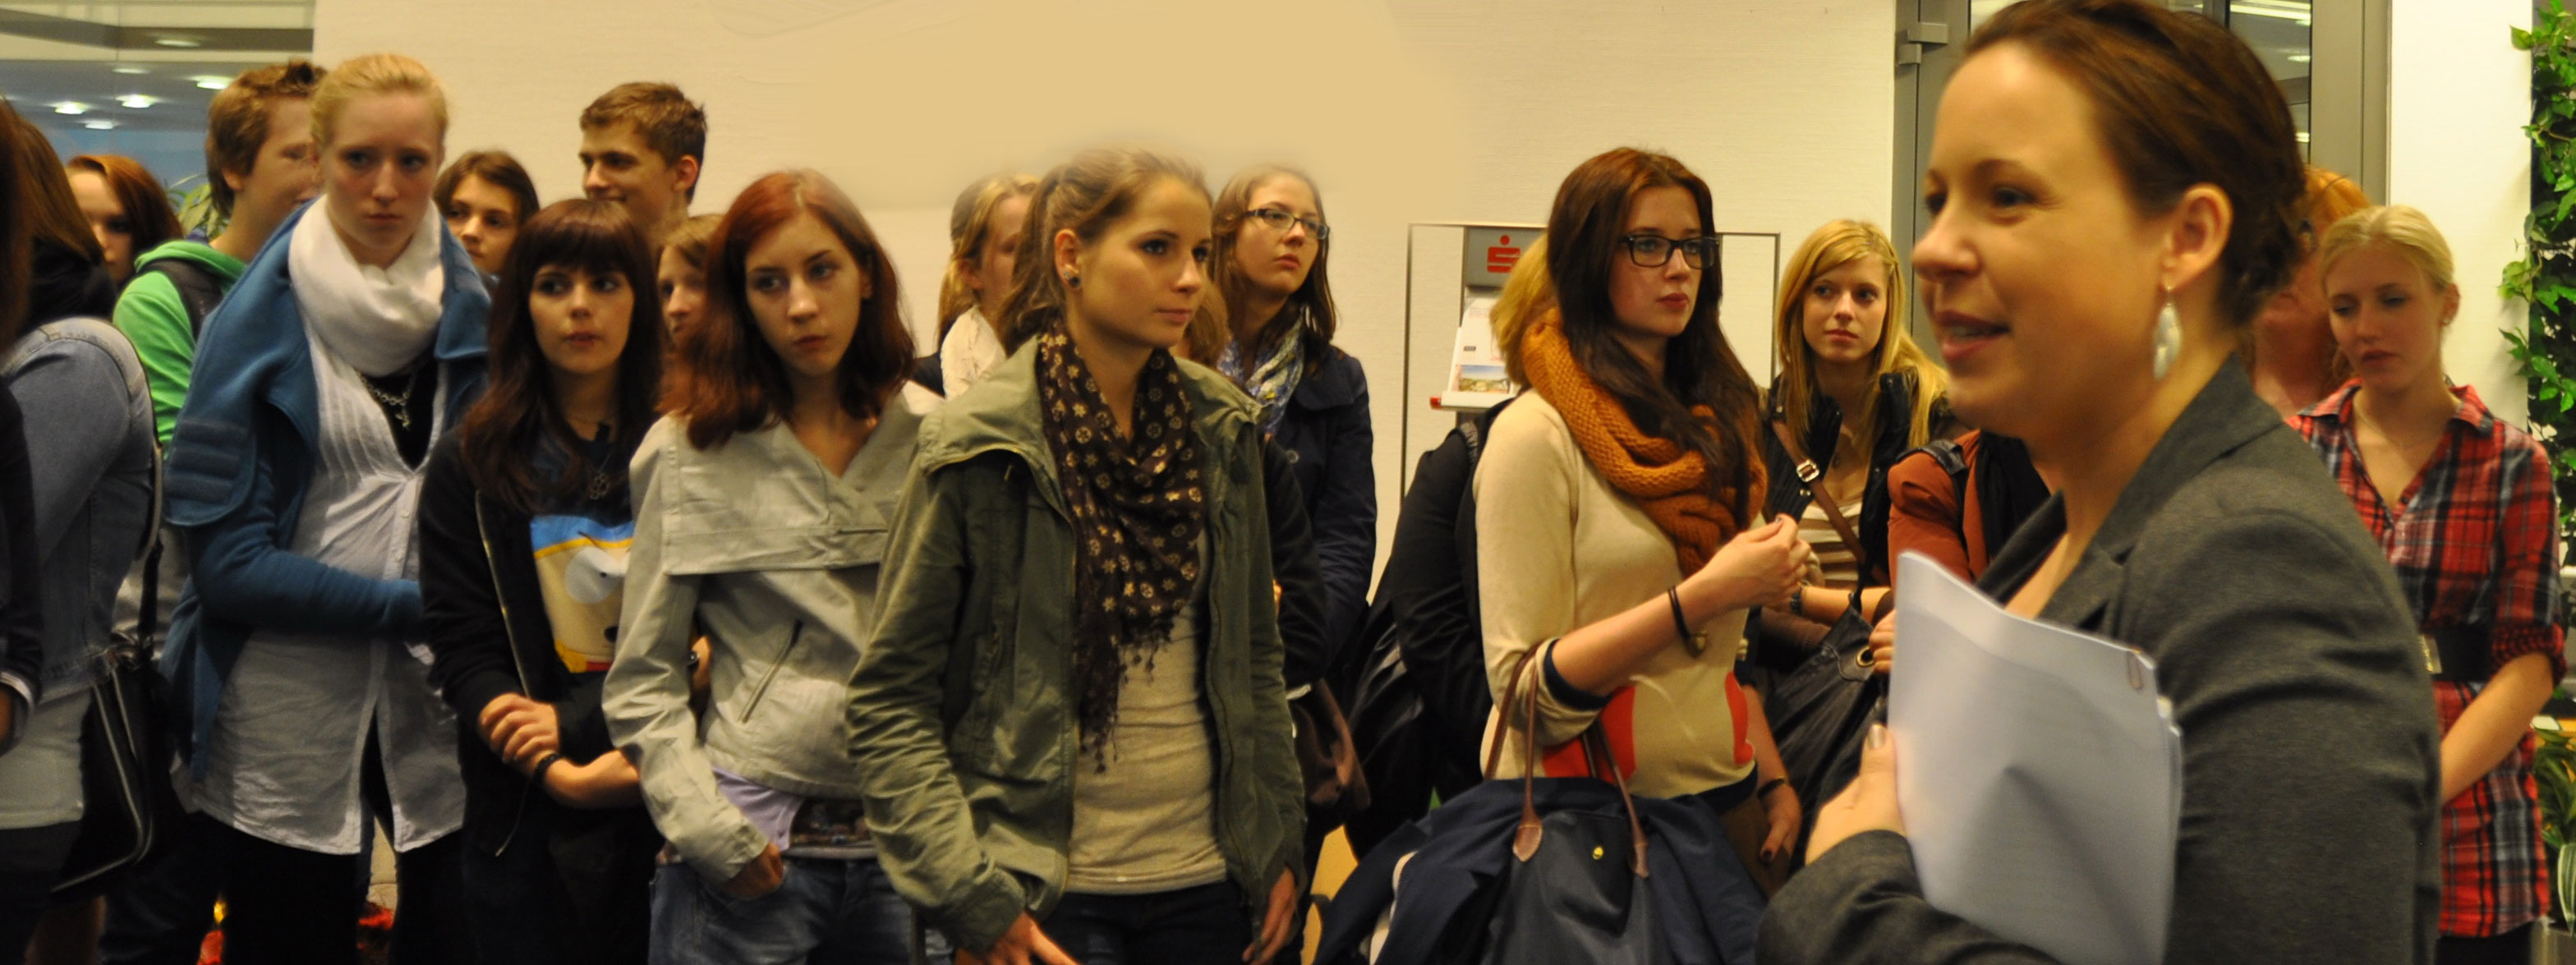 RBG-Schüler und Saskia Lipps  beim Einwochenmuseum in der Sparkasse  Foto: Linde Arndt